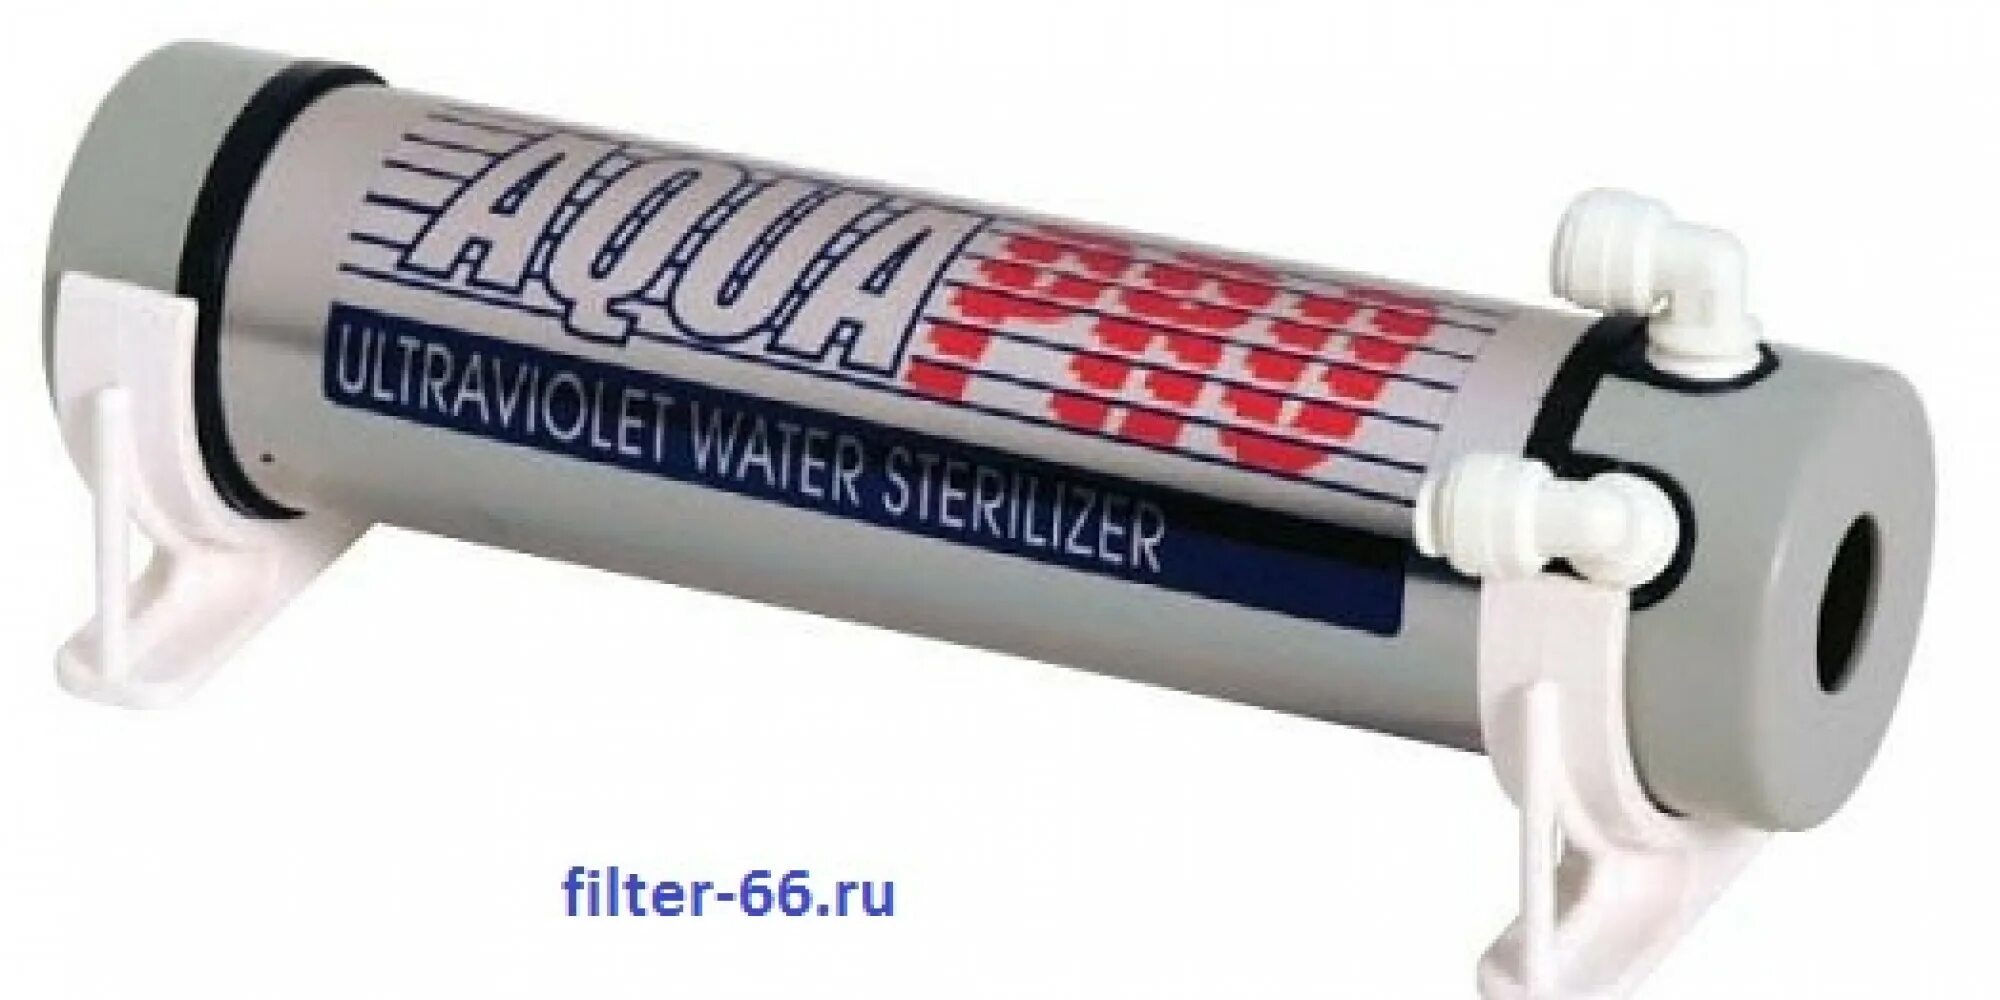 Стерилизаторы aquapro. УФ стерилизатор AQUAPRO UV-S (0,25 м3/ч). Ультрафиолетовый стерилизатор AQUAPRO UV-S. УФ стерилизатор 1gpm. УФ стерилизатор AQUAPRO UV-1gpm (0,5 м3/ч).